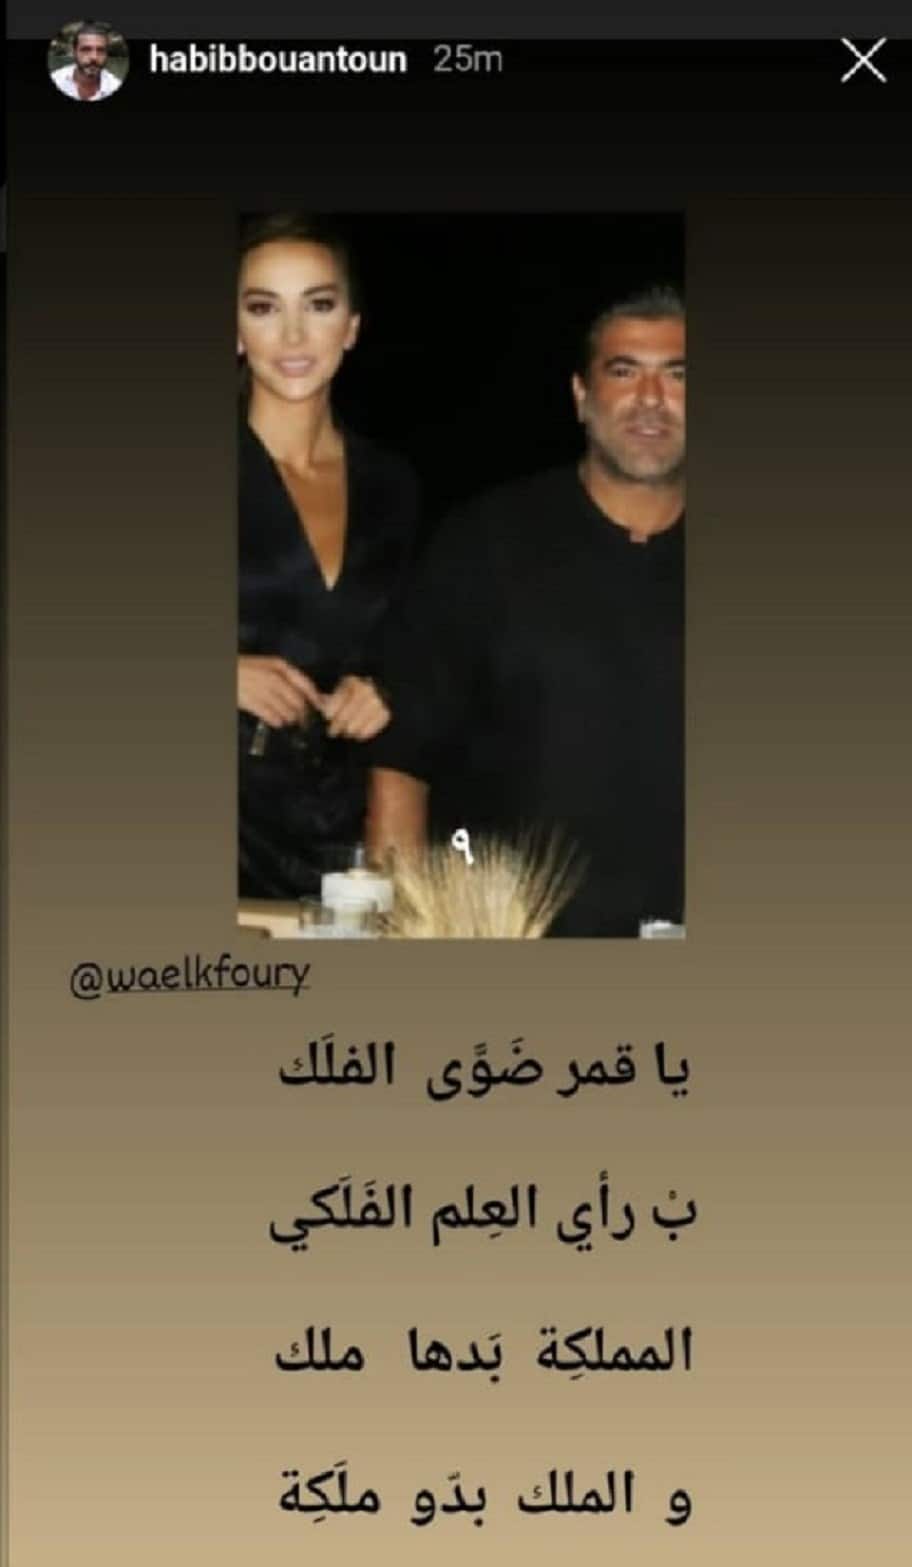 Wael Kfoury ගේ විවාහය සහ ඔහුගේ හදවත තෝරාගත් කාන්තාව වන Shana Abboud කවුද?